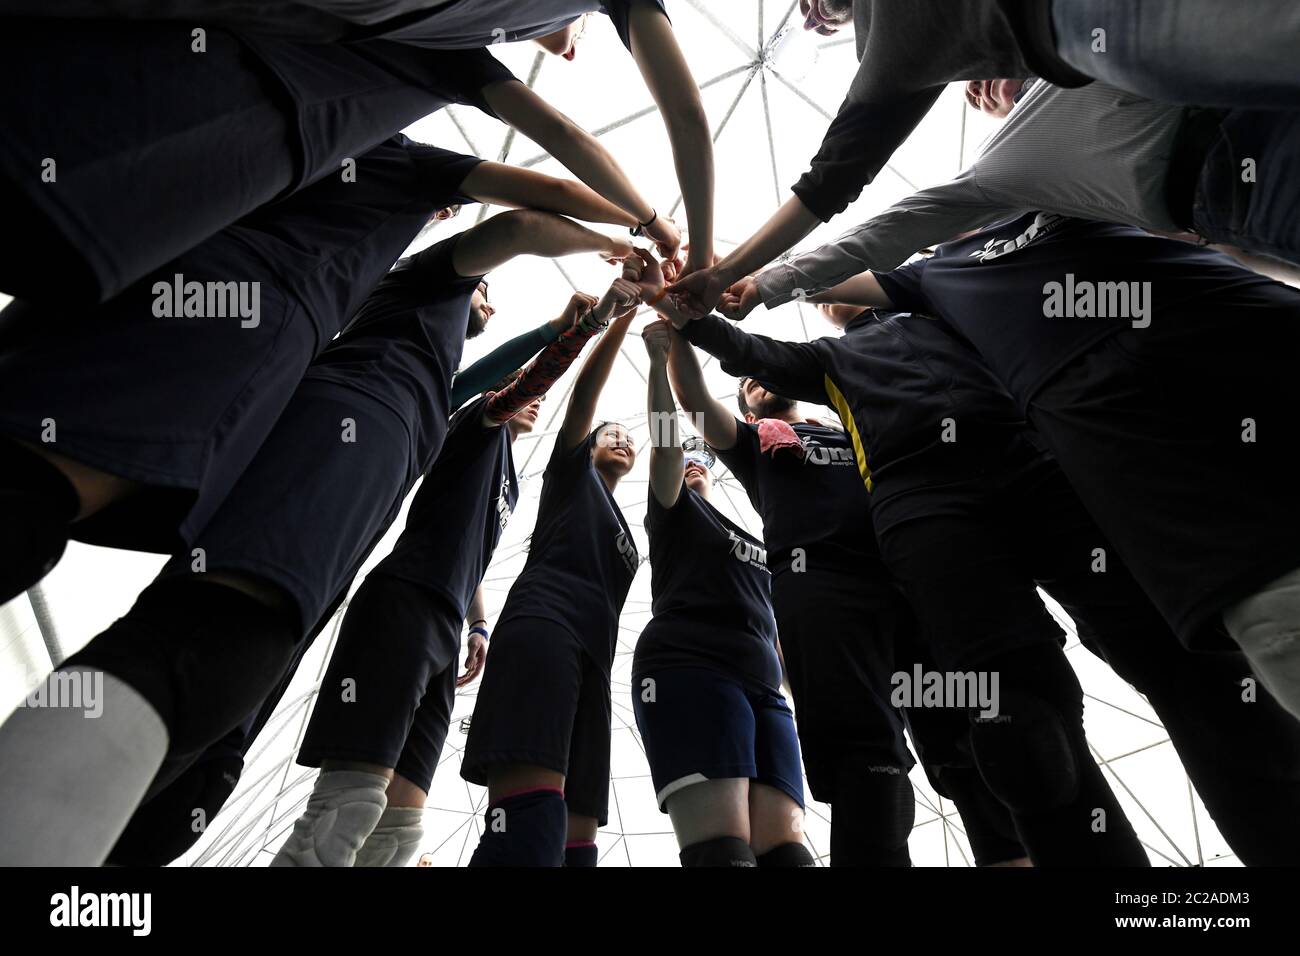 Coéquipiers féminins et masculins, se soutenant les uns les autres en tenant les mains dans un cercle, lors d'un match de tchouklball, à Milan. Banque D'Images